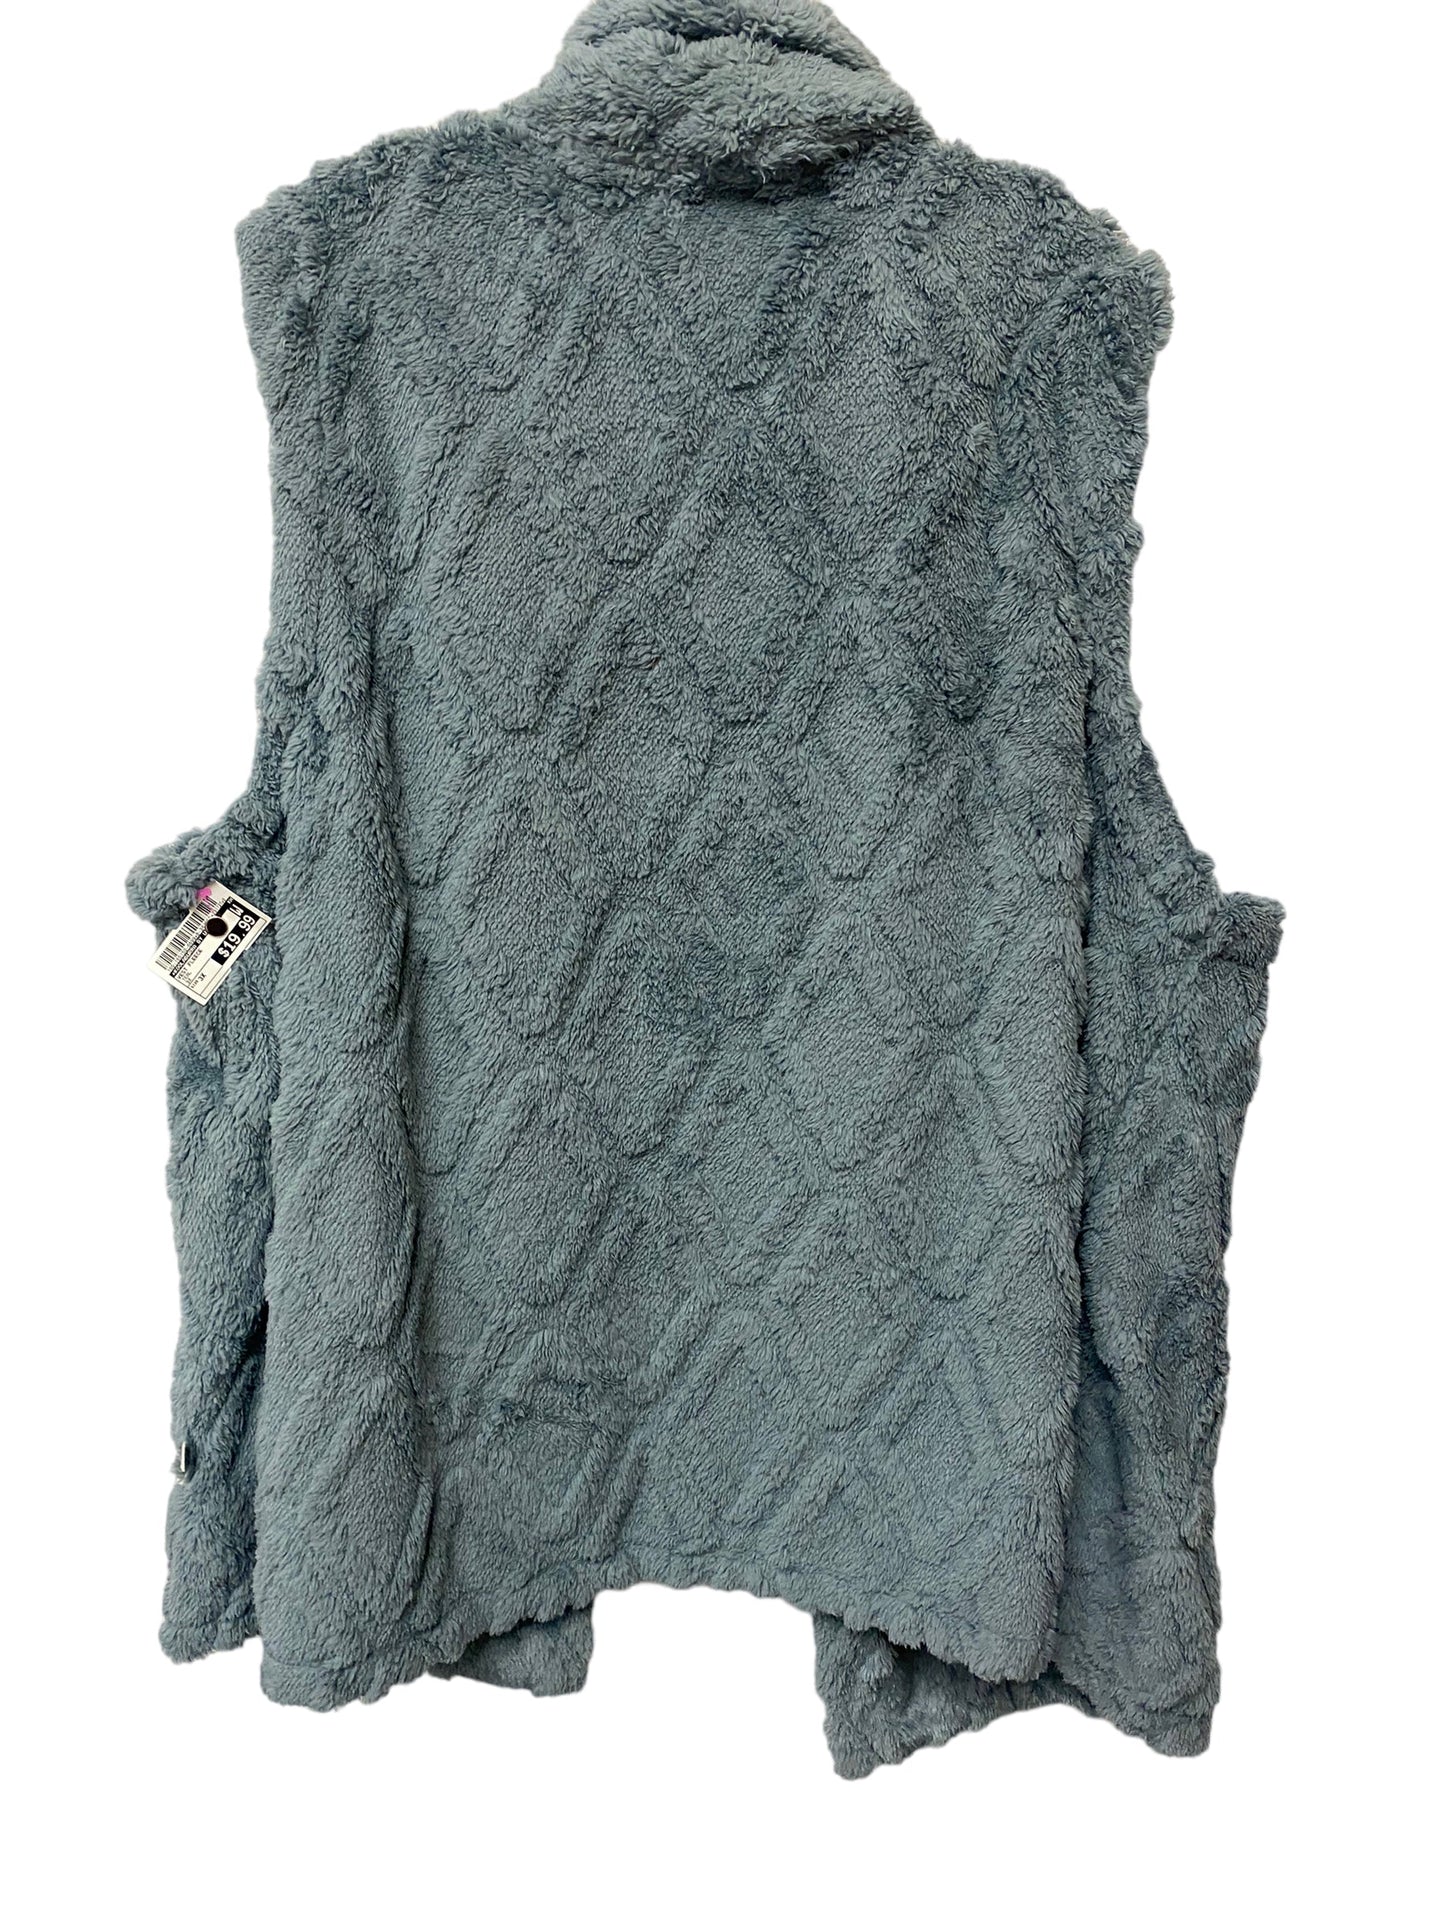 Vest Fleece By Koolaburra By Ugg  Size: 3x